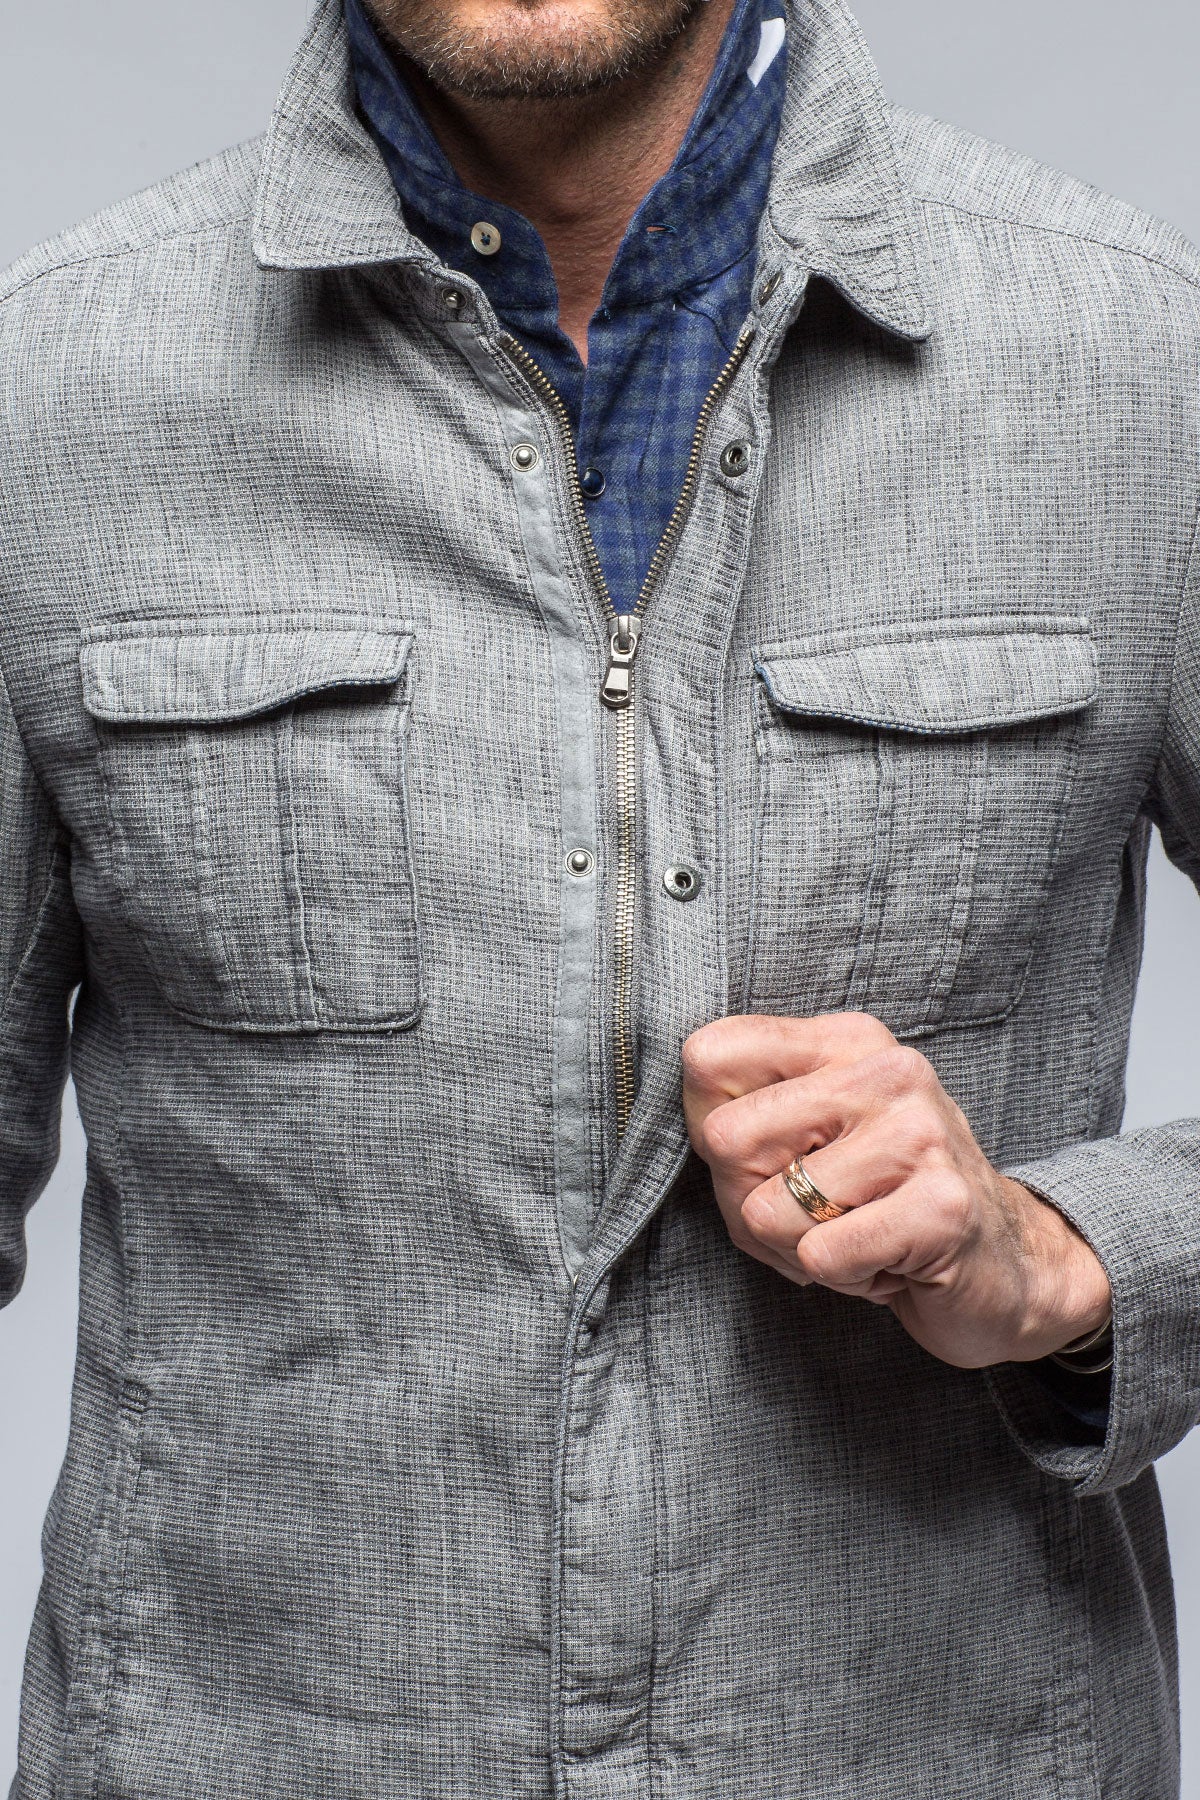 Davos Cotton/Linen Jacket | Warehouse - Mens - Outerwear - Cloth | Gimo's